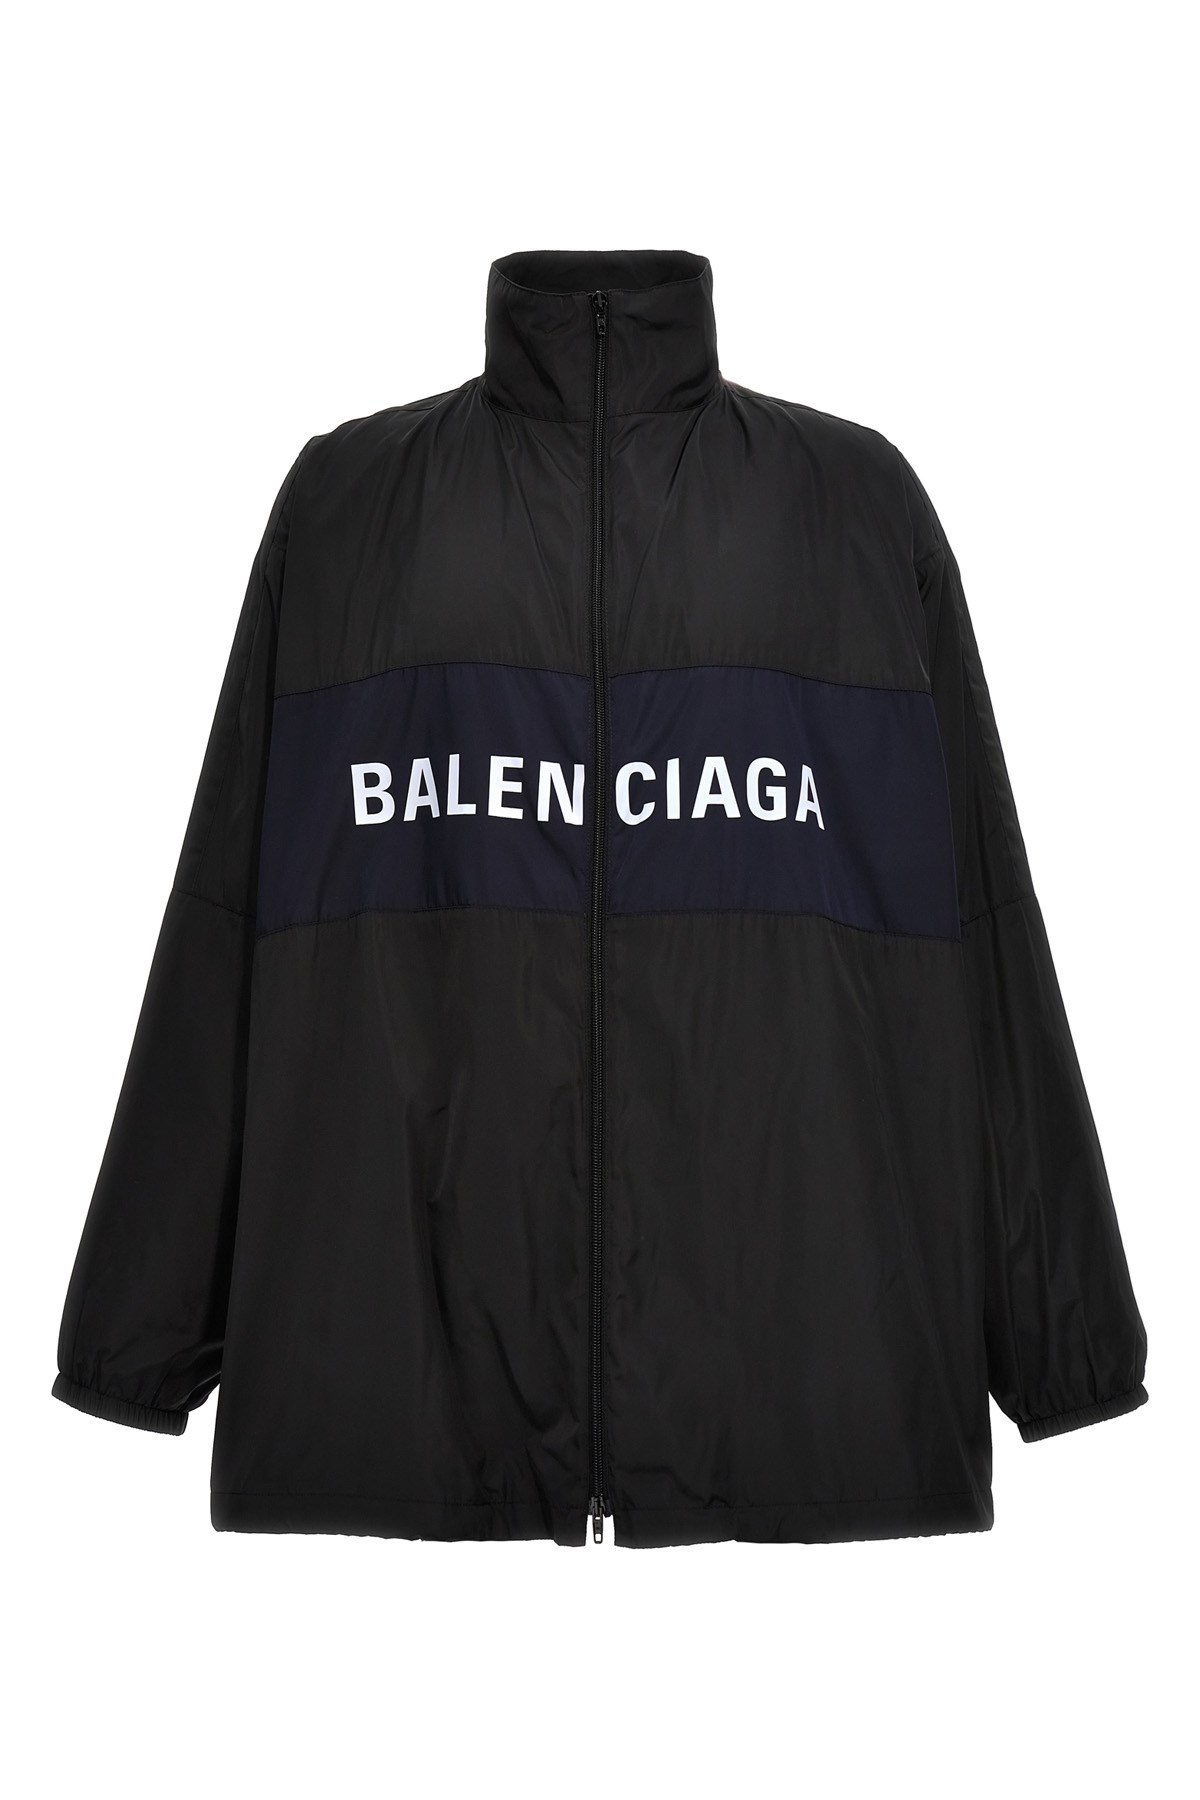 'Balenciaga' jacket - 1